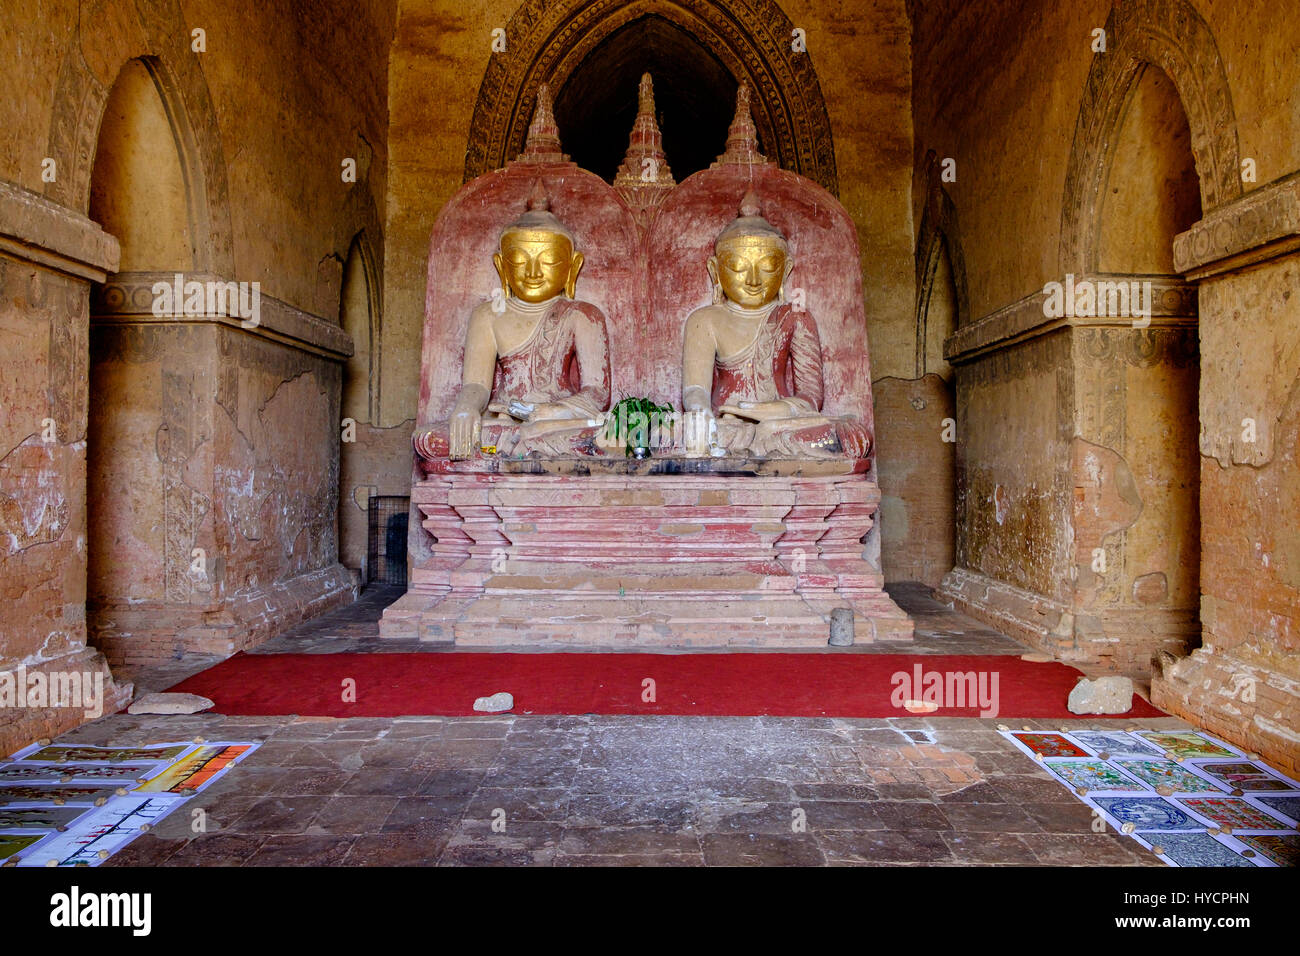 Deux statues de Bouddha en or de l'ancien temple de Bagan, Myanmar (Birmanie) Banque D'Images